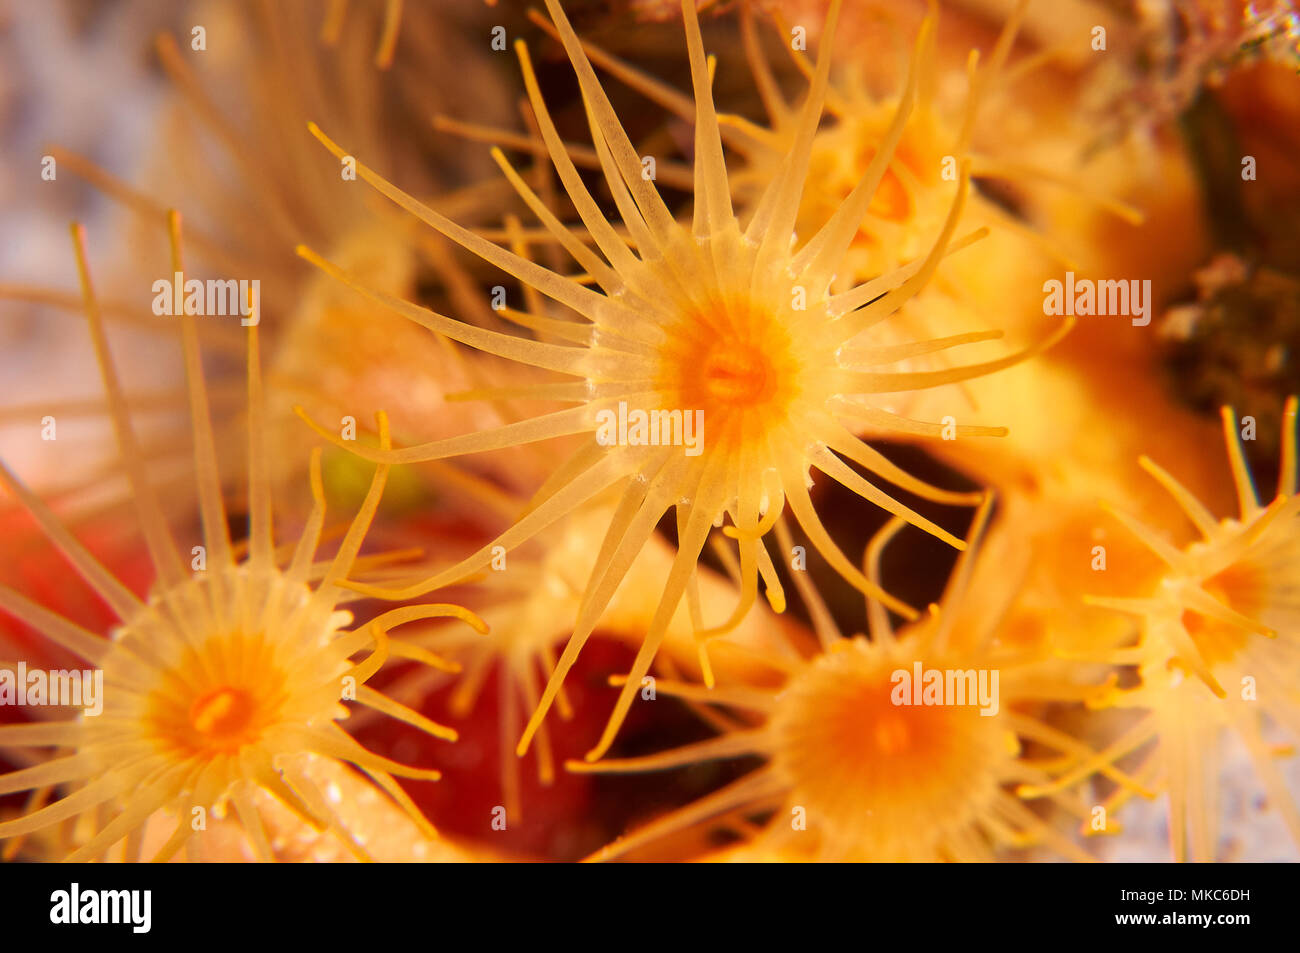 Détail de polypes de corail macro à partir d'un cluster jaune (Parazoanthus axinellae) anémone de mer Méditerranée (Formentera, Iles Baléares, Espagne) Banque D'Images